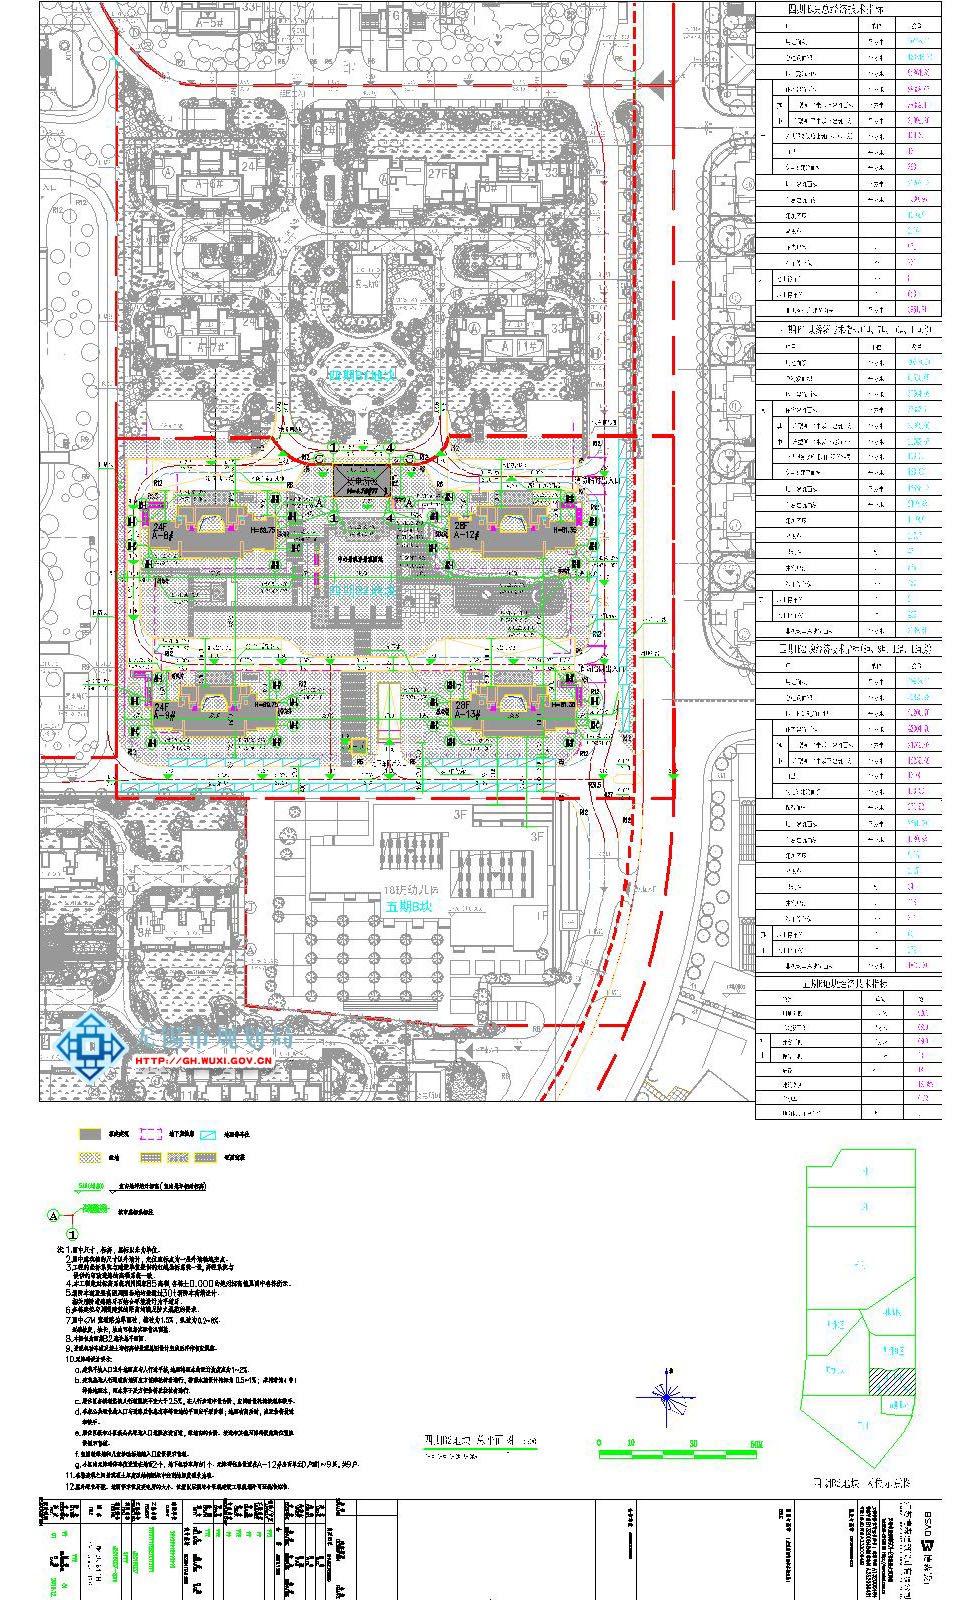 绿地世纪城住宅小区四期工程(B区A8-9#、A12-13#及地下室)建设工程规划许可证批前公示